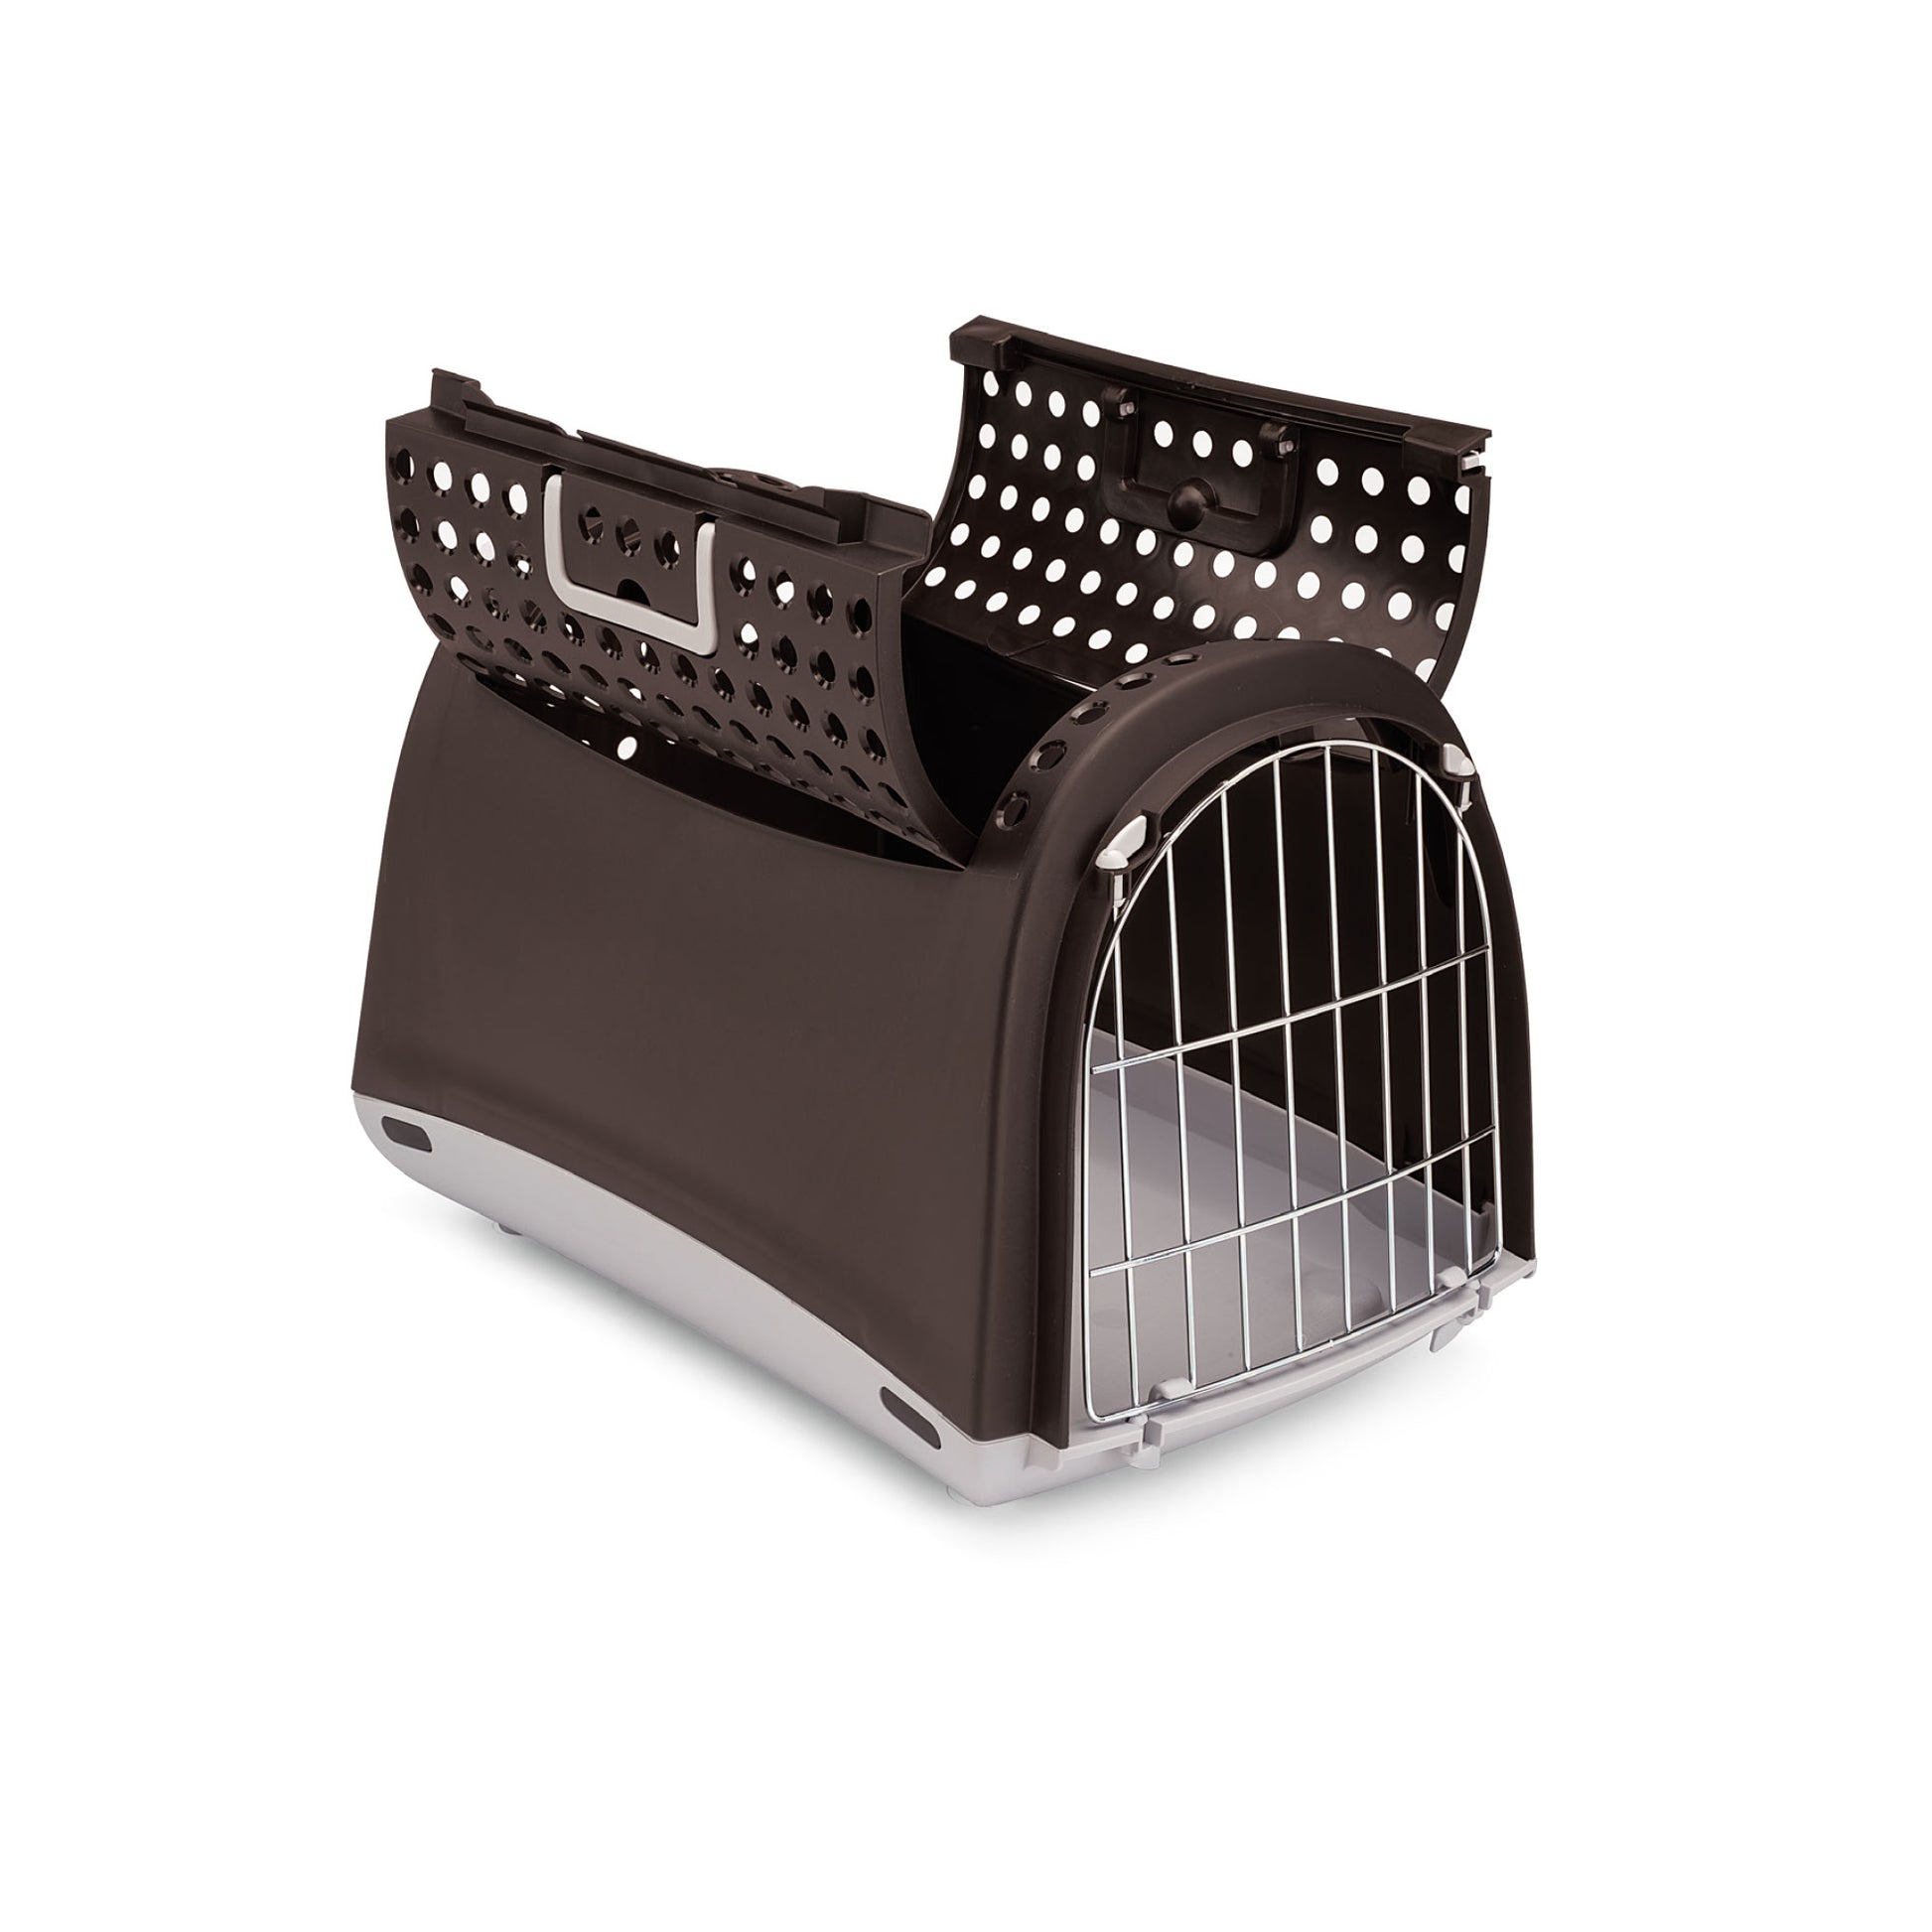 Cage de Transport Linus Pour Chat Et Petit chien Imac